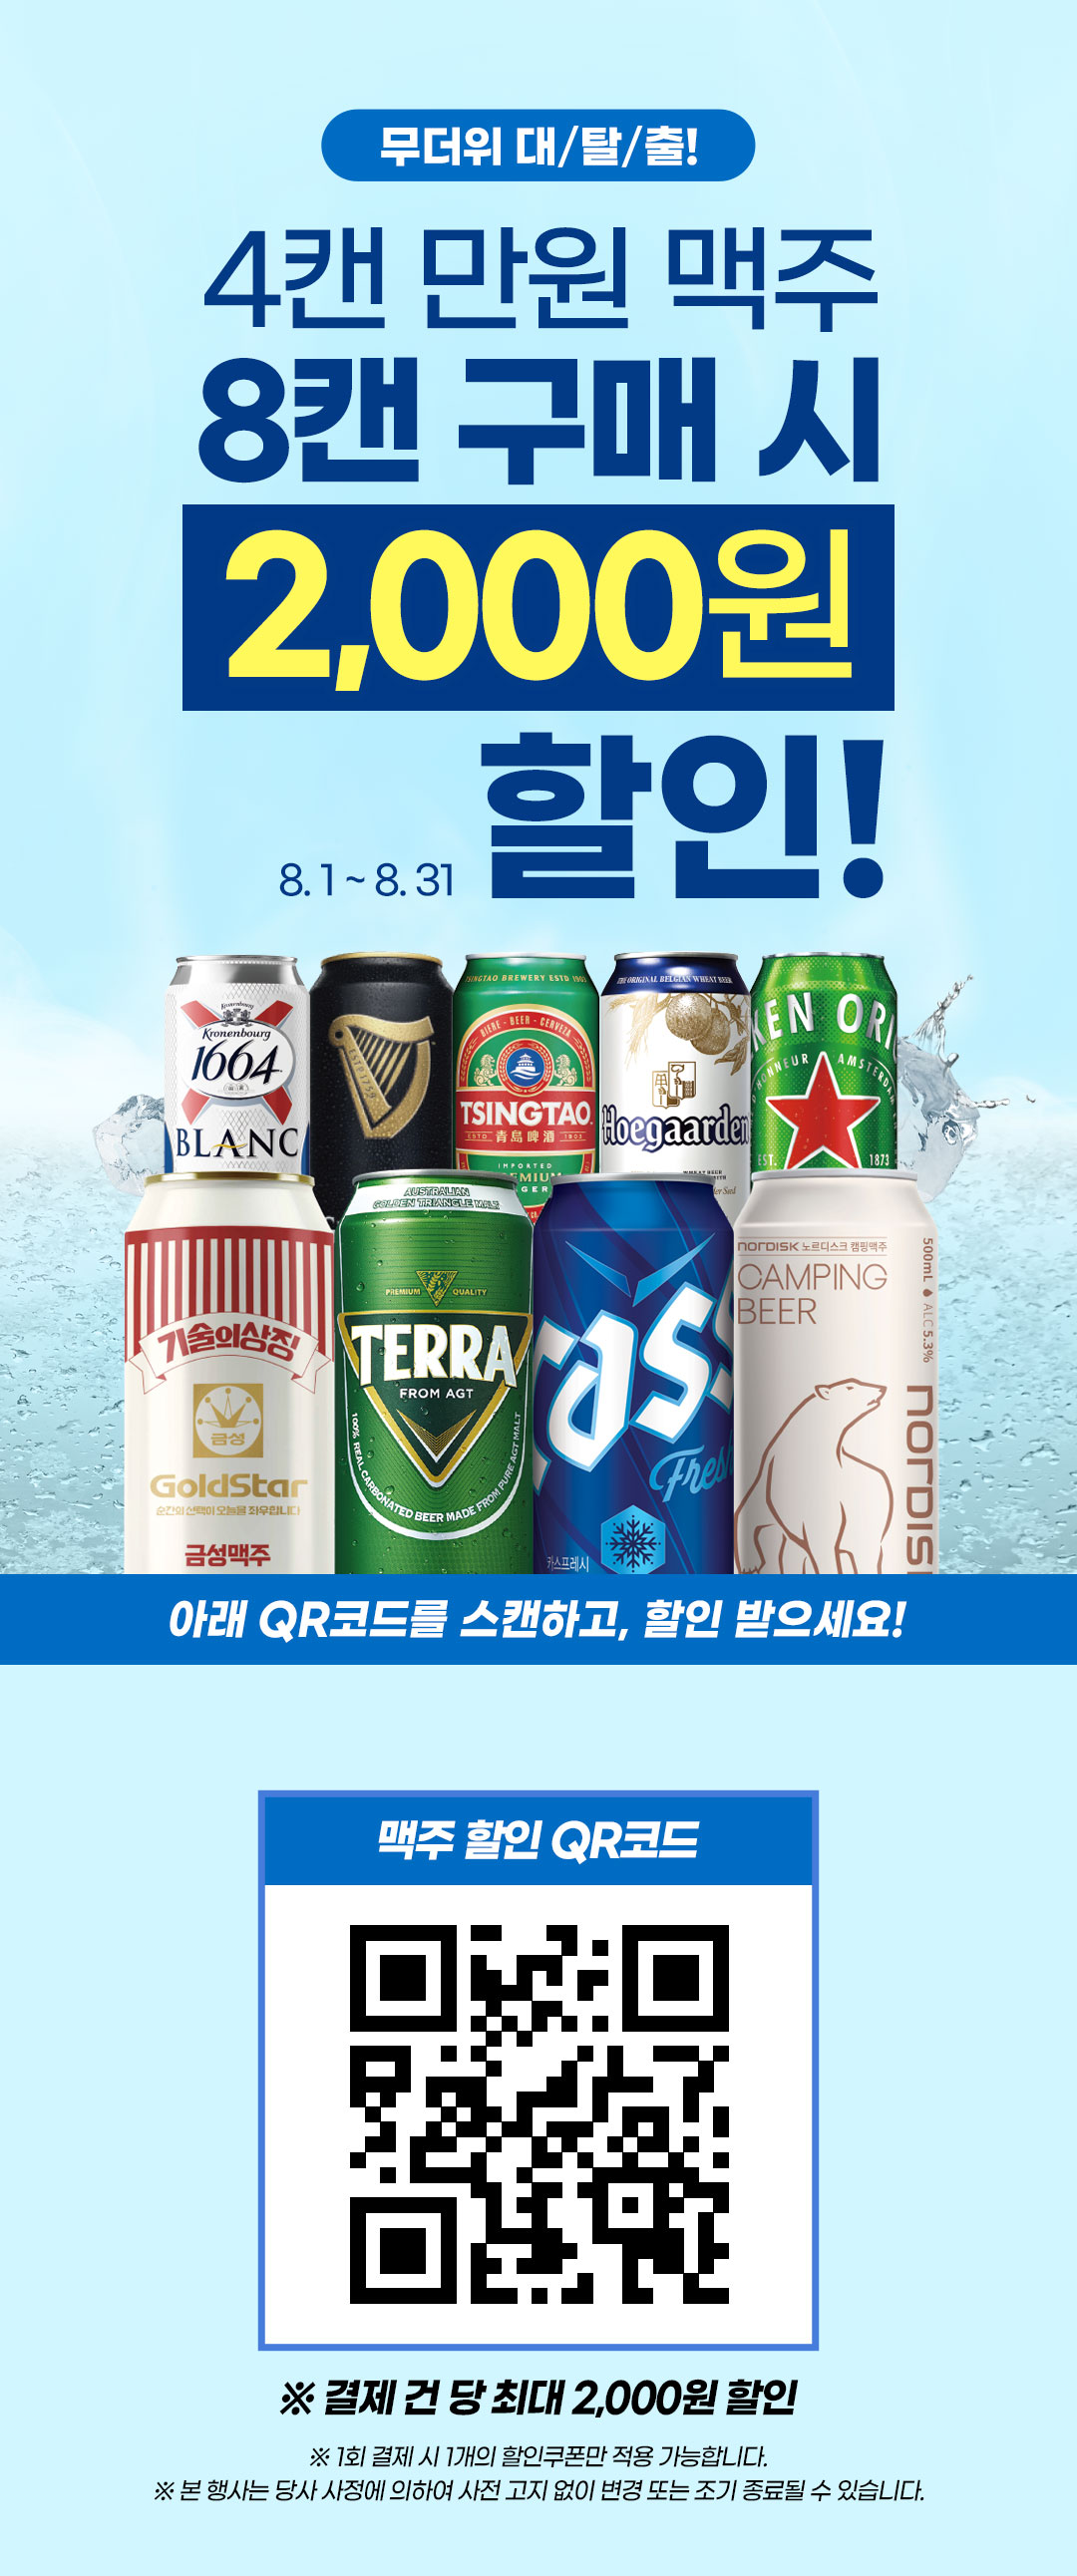 4캔 만원 맥주 8캔 구매 시 2천원 할인!